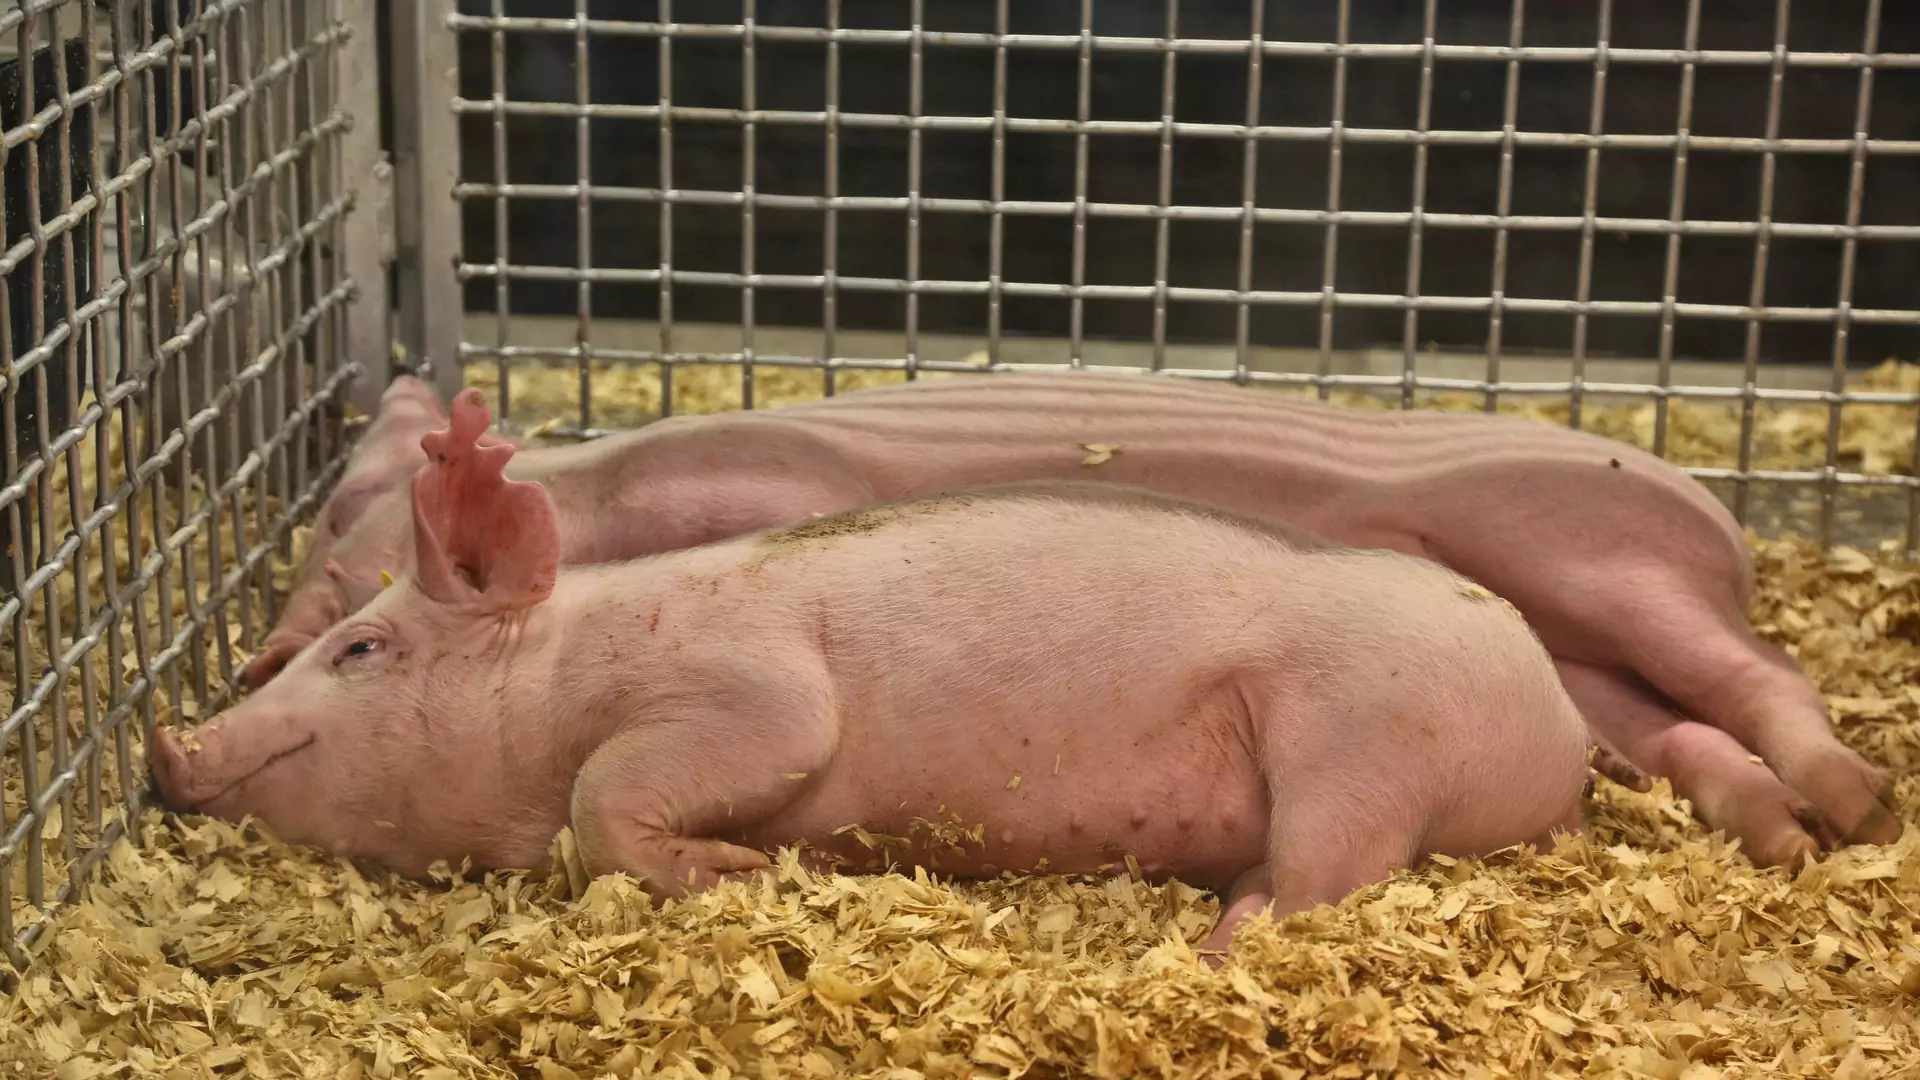 Chińscy naukowcy wykorzystali żywe świnie w crash testach. PETA krytykuje okrutny eksperyment